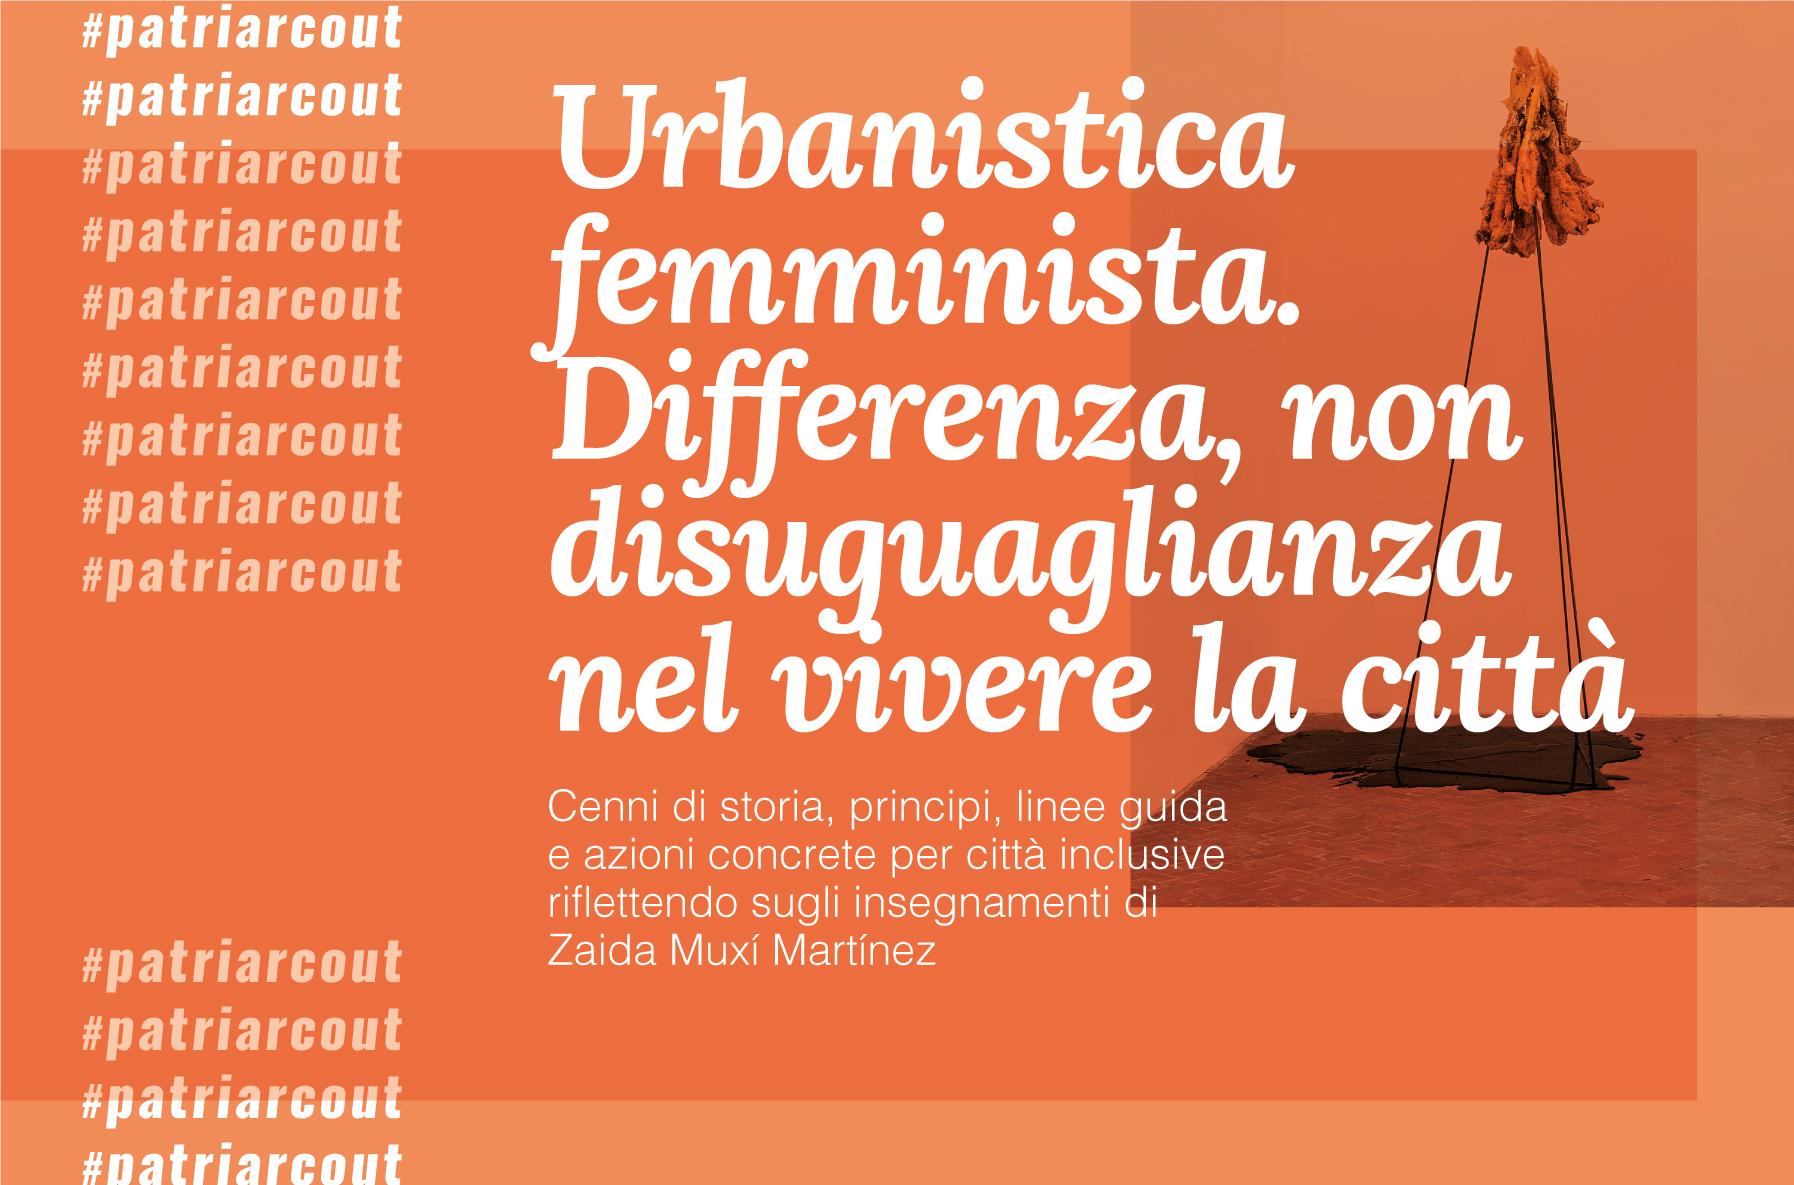 Urbanistica femminista